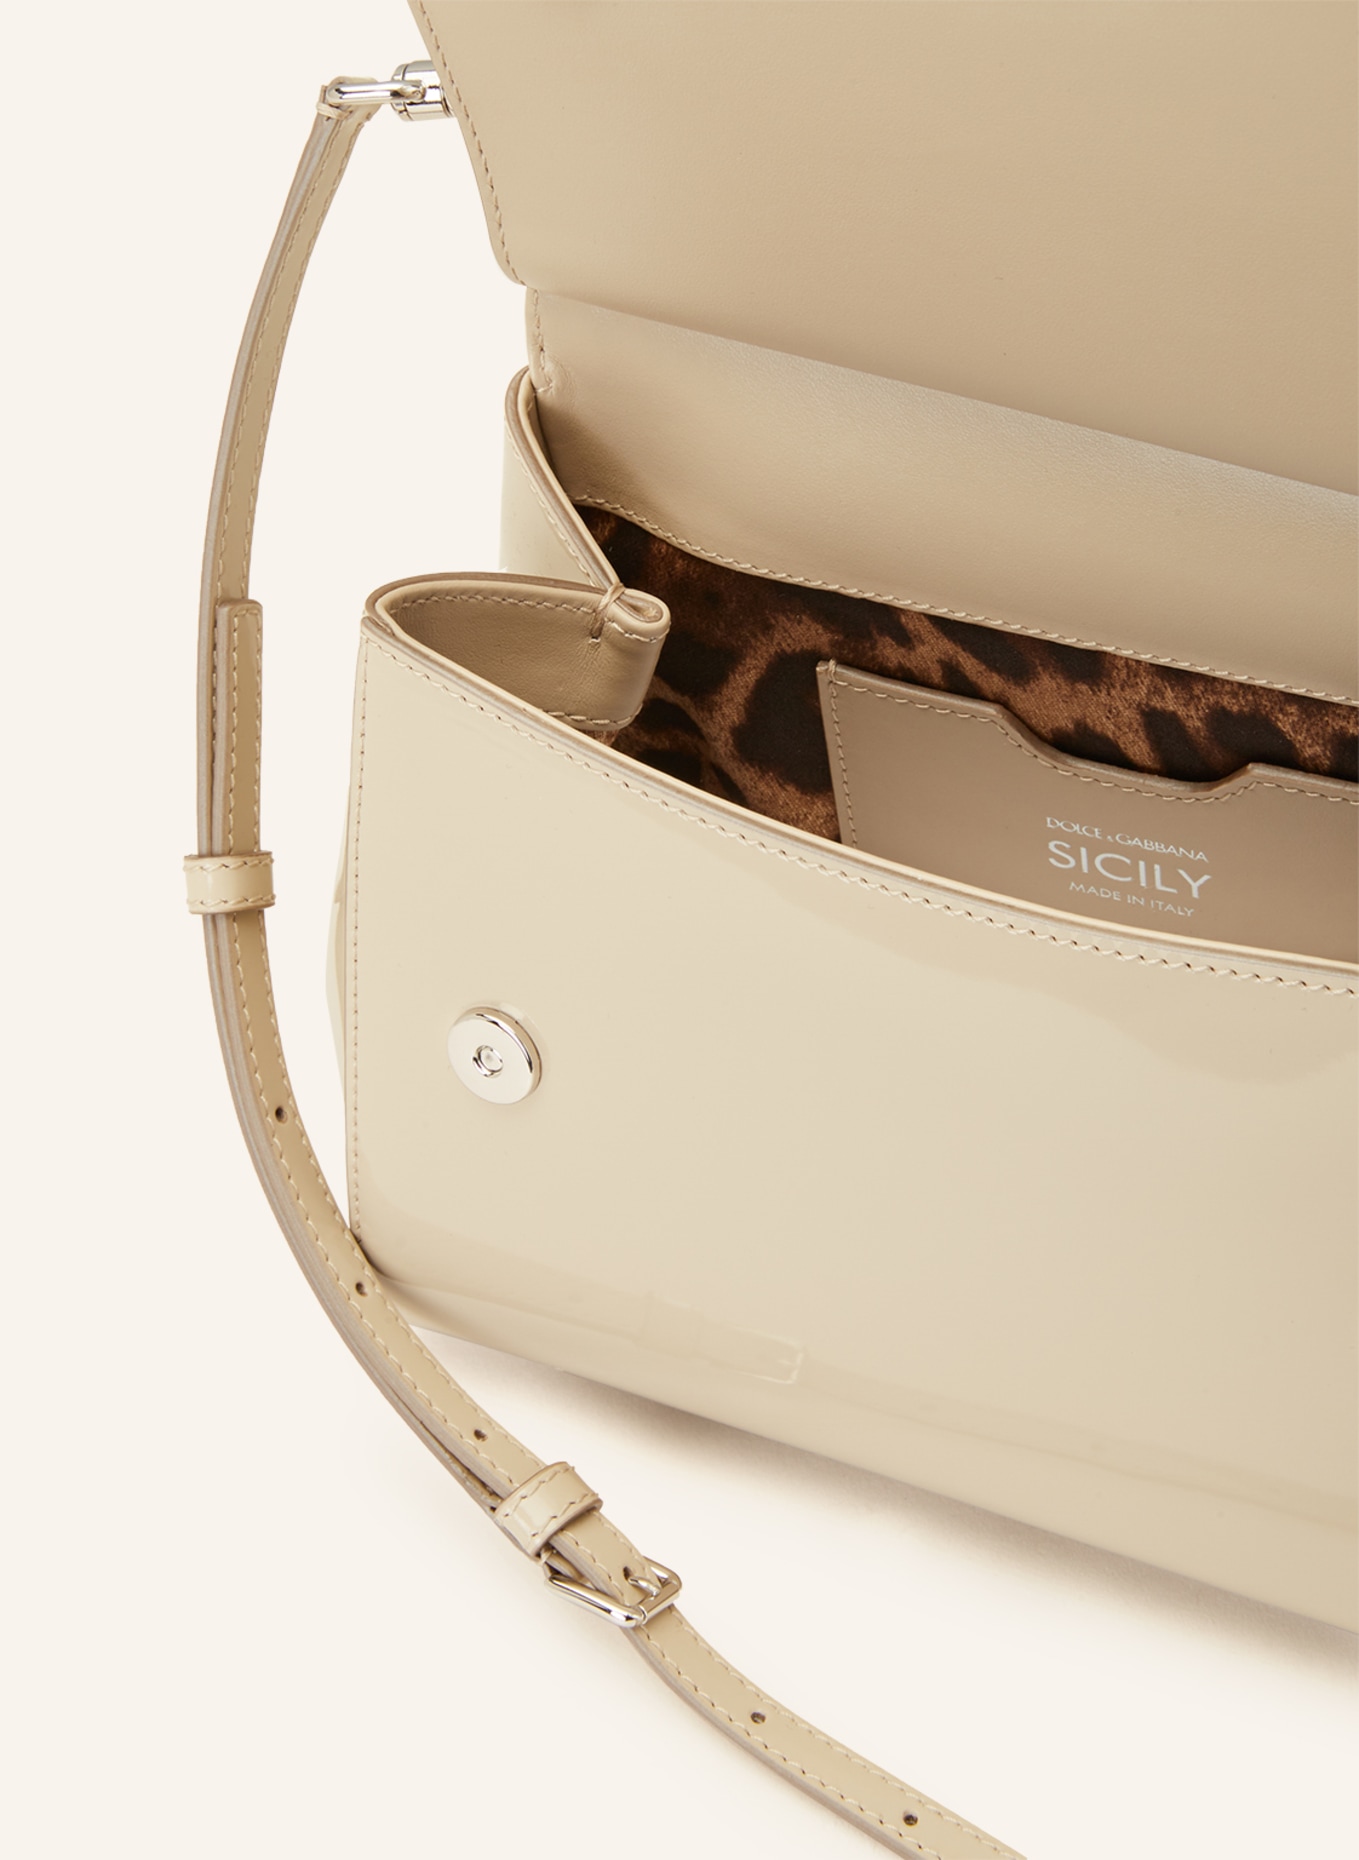 DOLCE & GABBANA Handbag SICILY, Color: BEIGE (Image 3)